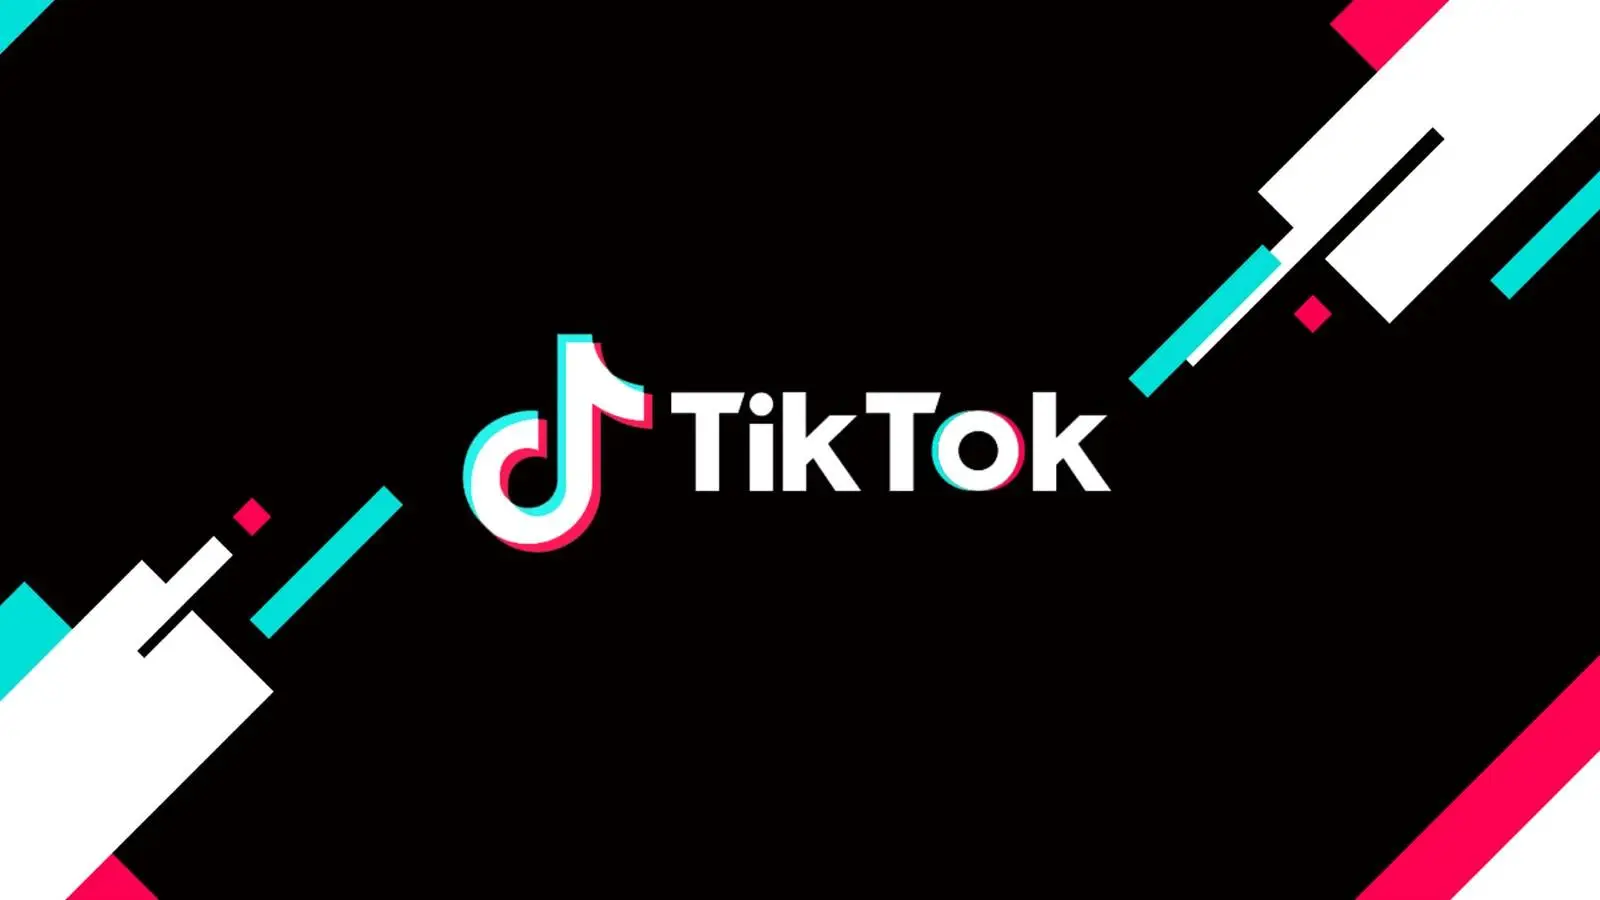 TikTok continua a combattere la disinformazione per proteggere gli utenti